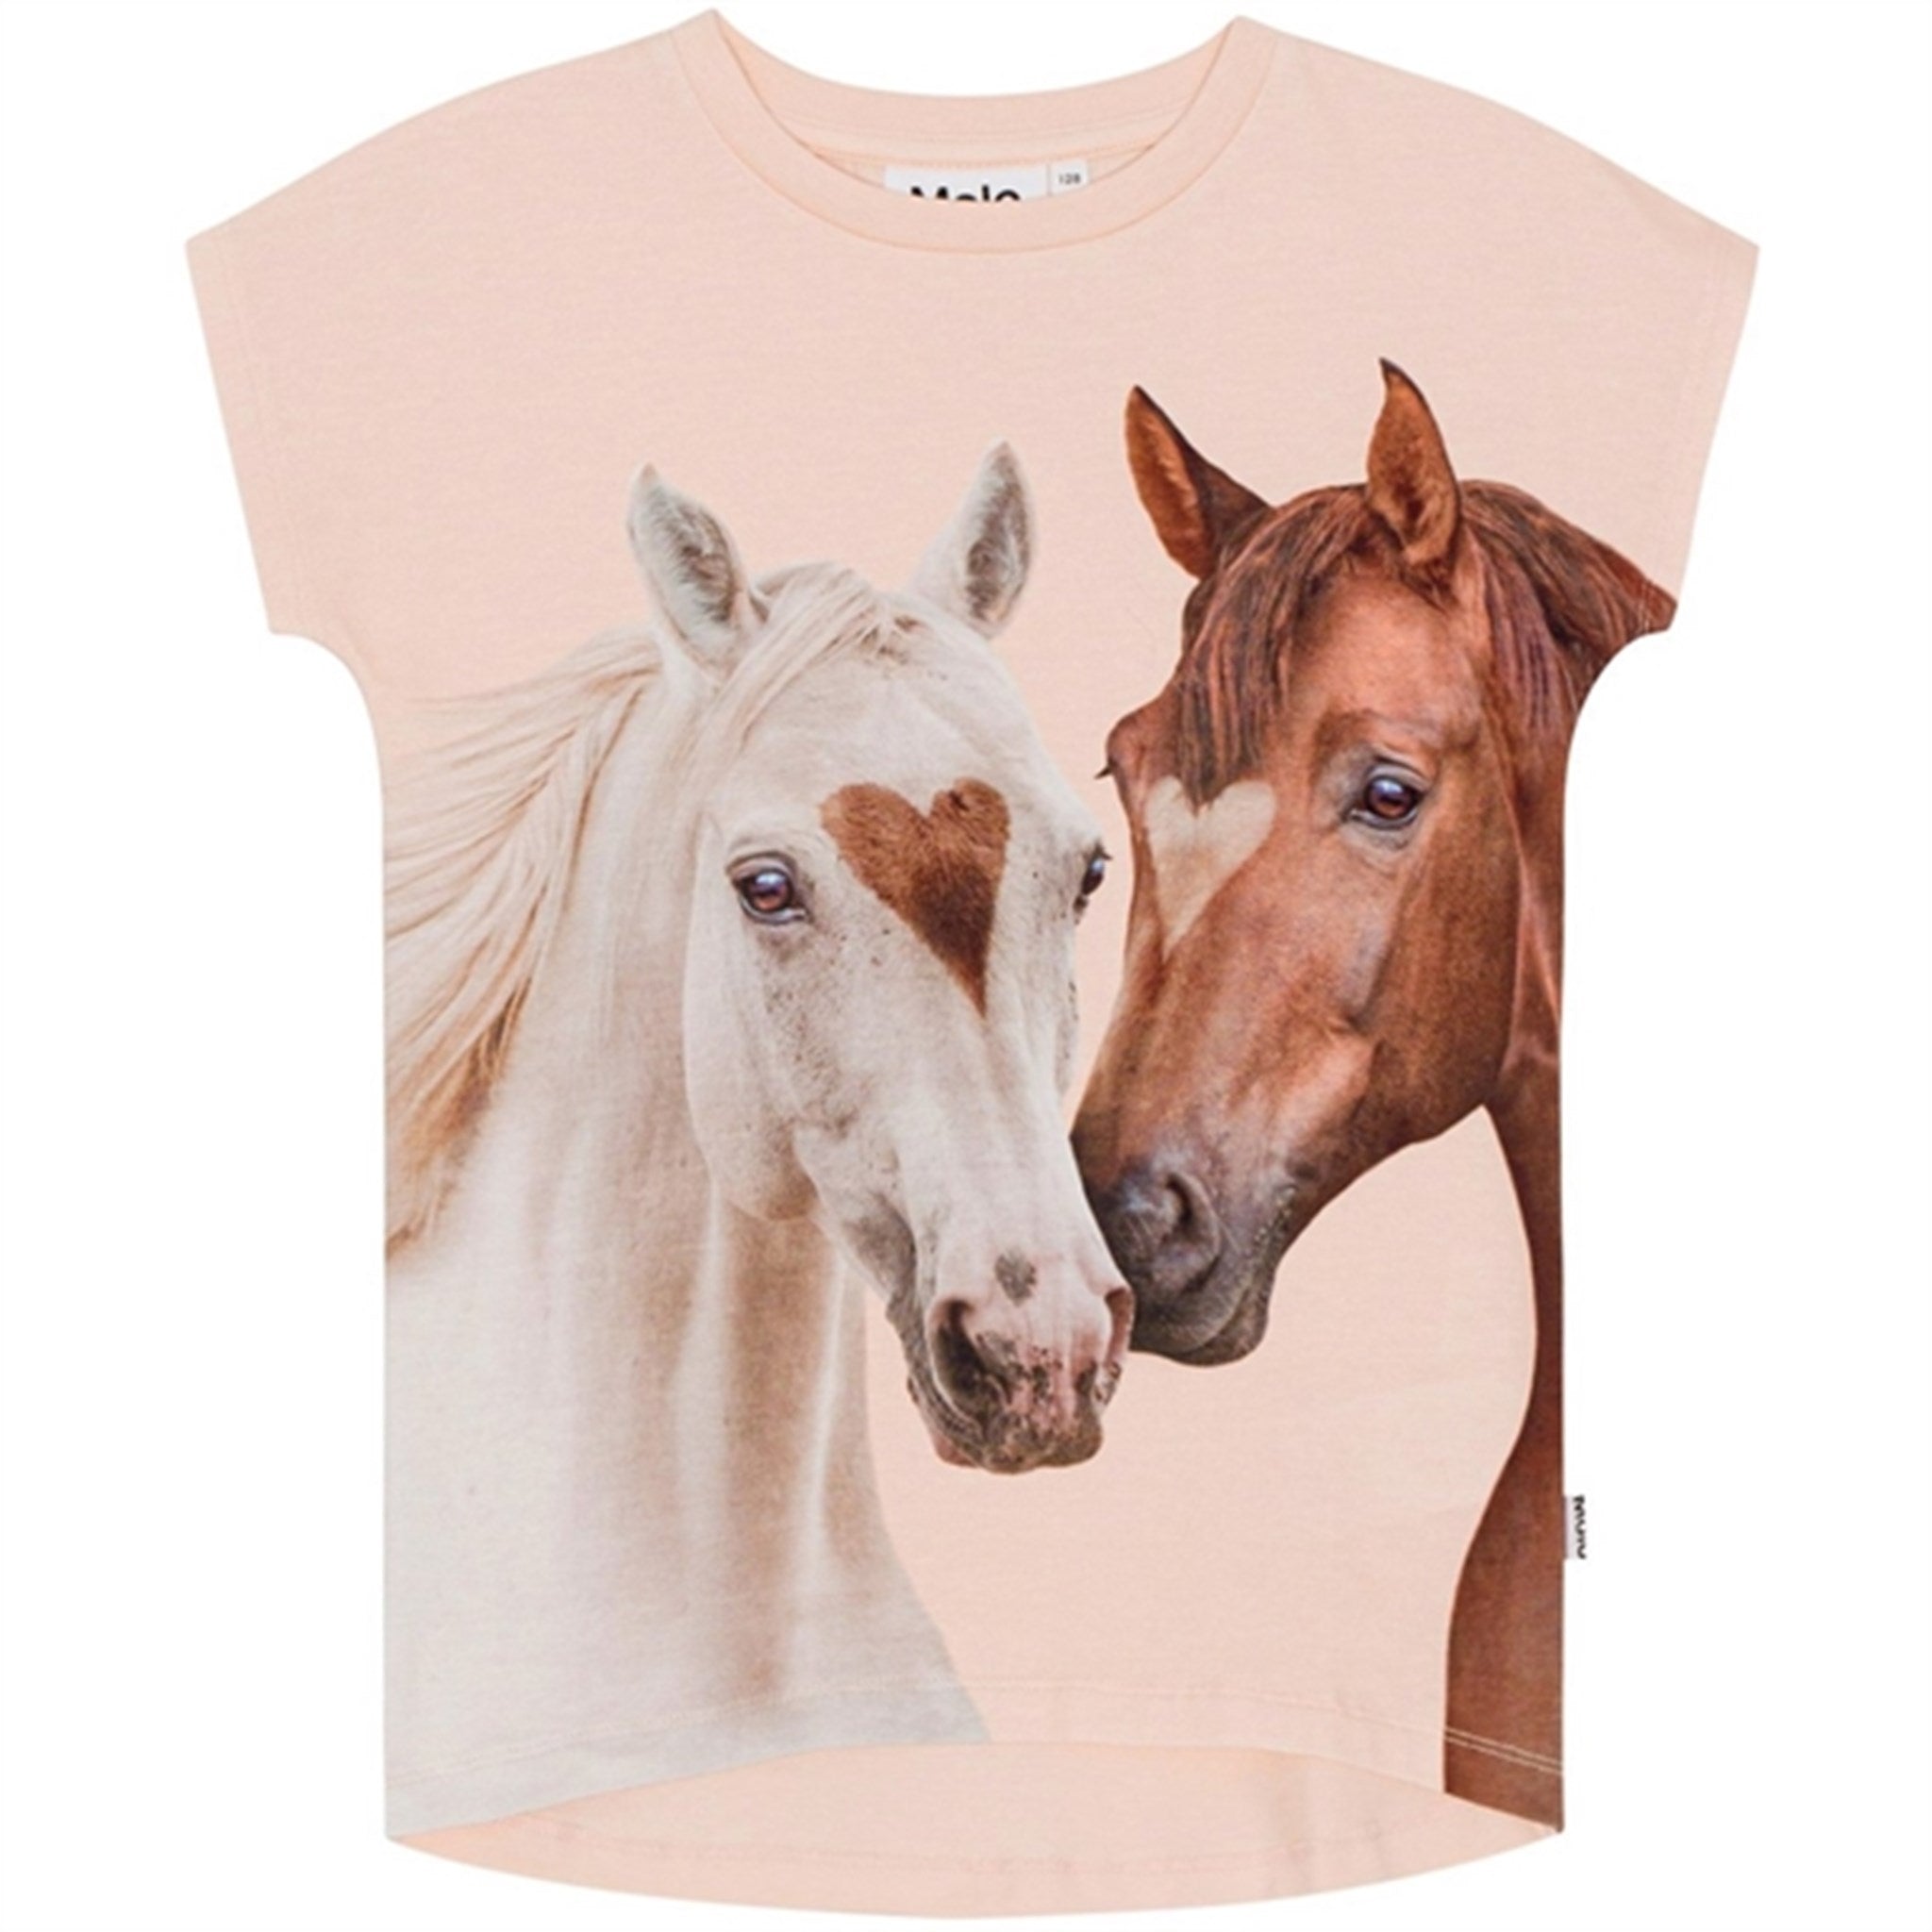 Molo Yin Yang Horses Ragnhilde T-Shirt